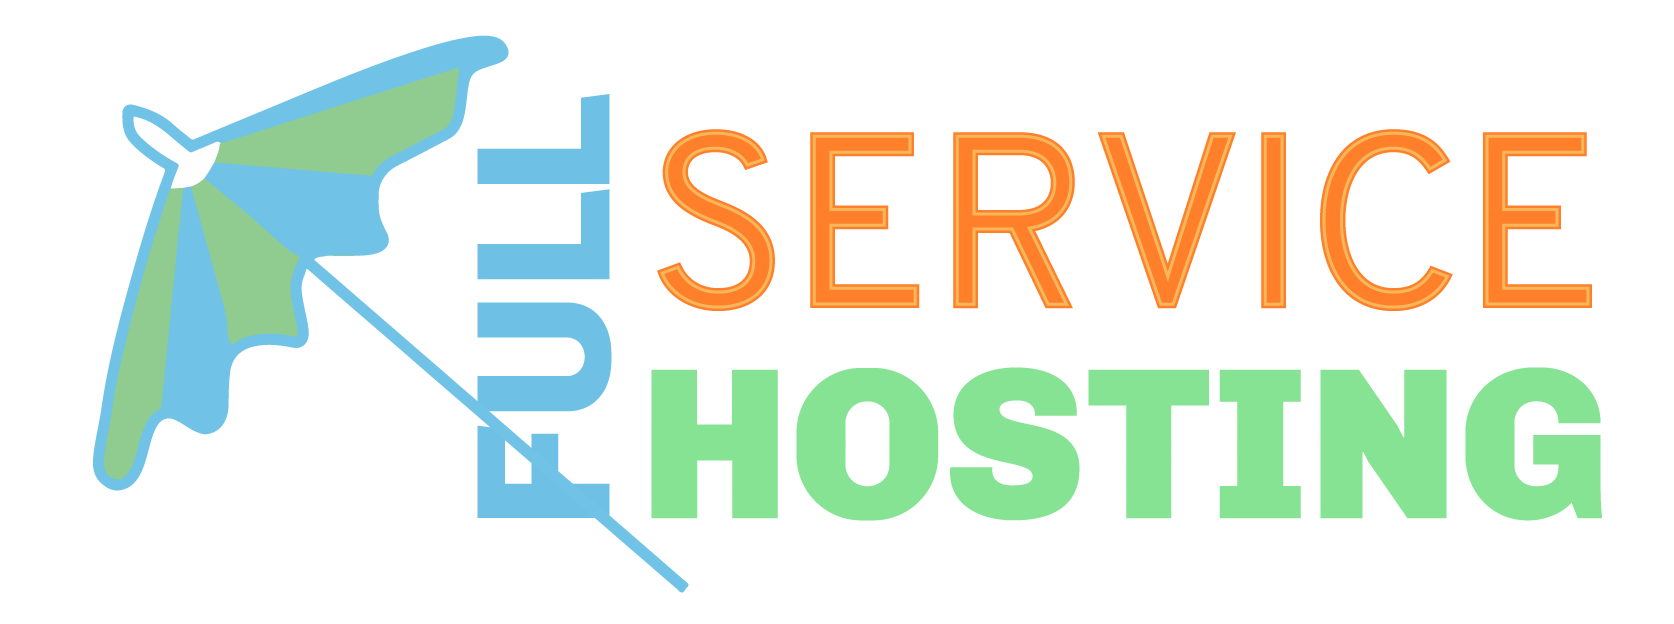 Full Service Hosting logo